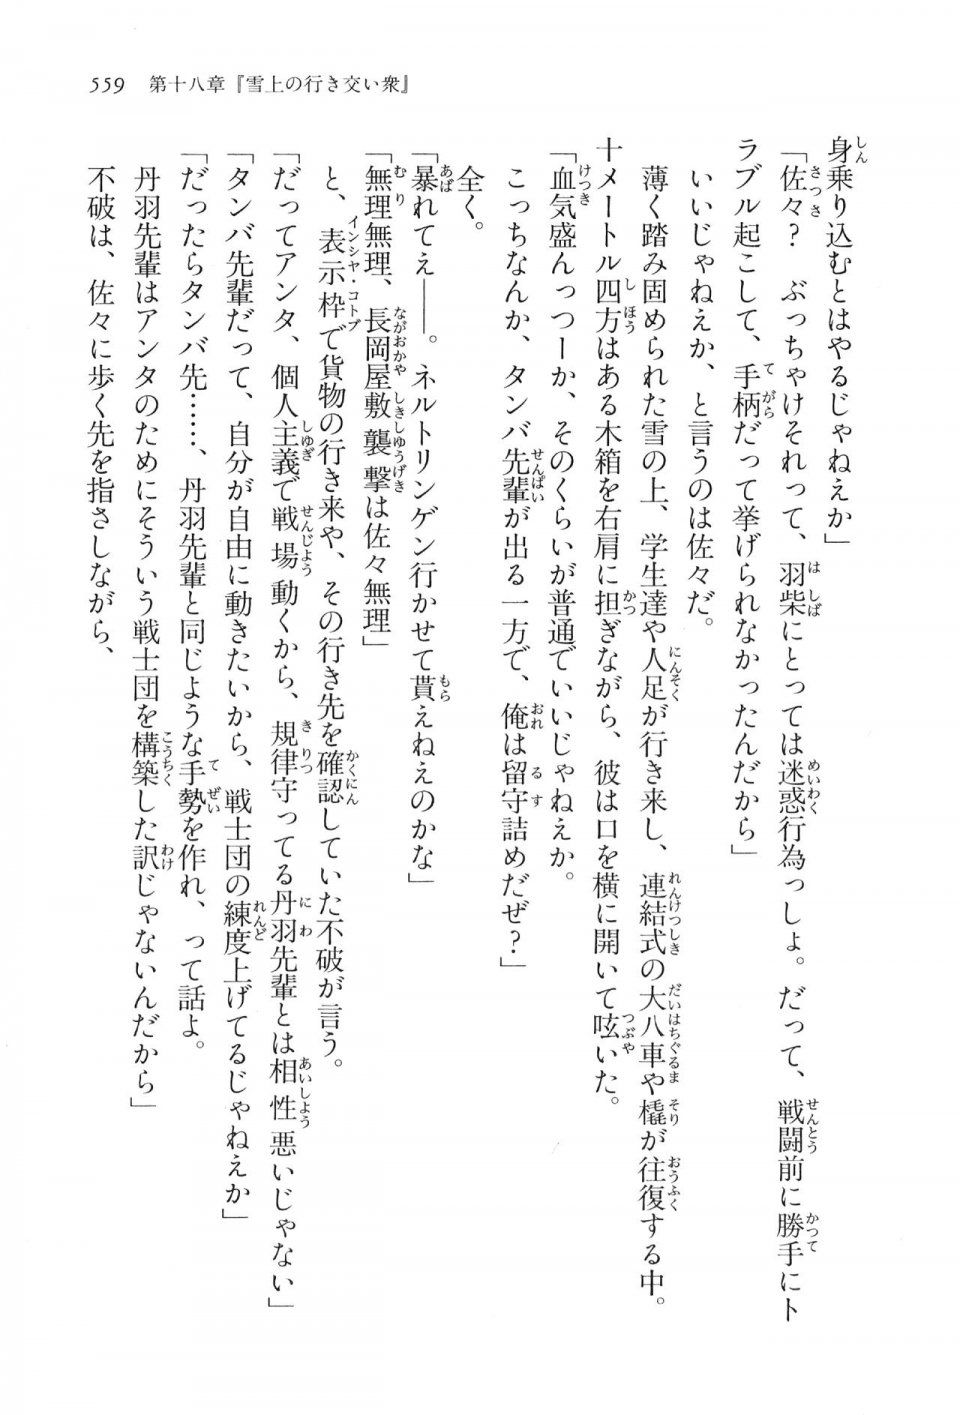 Kyoukai Senjou no Horizon LN Vol 16(7A) - Photo #559